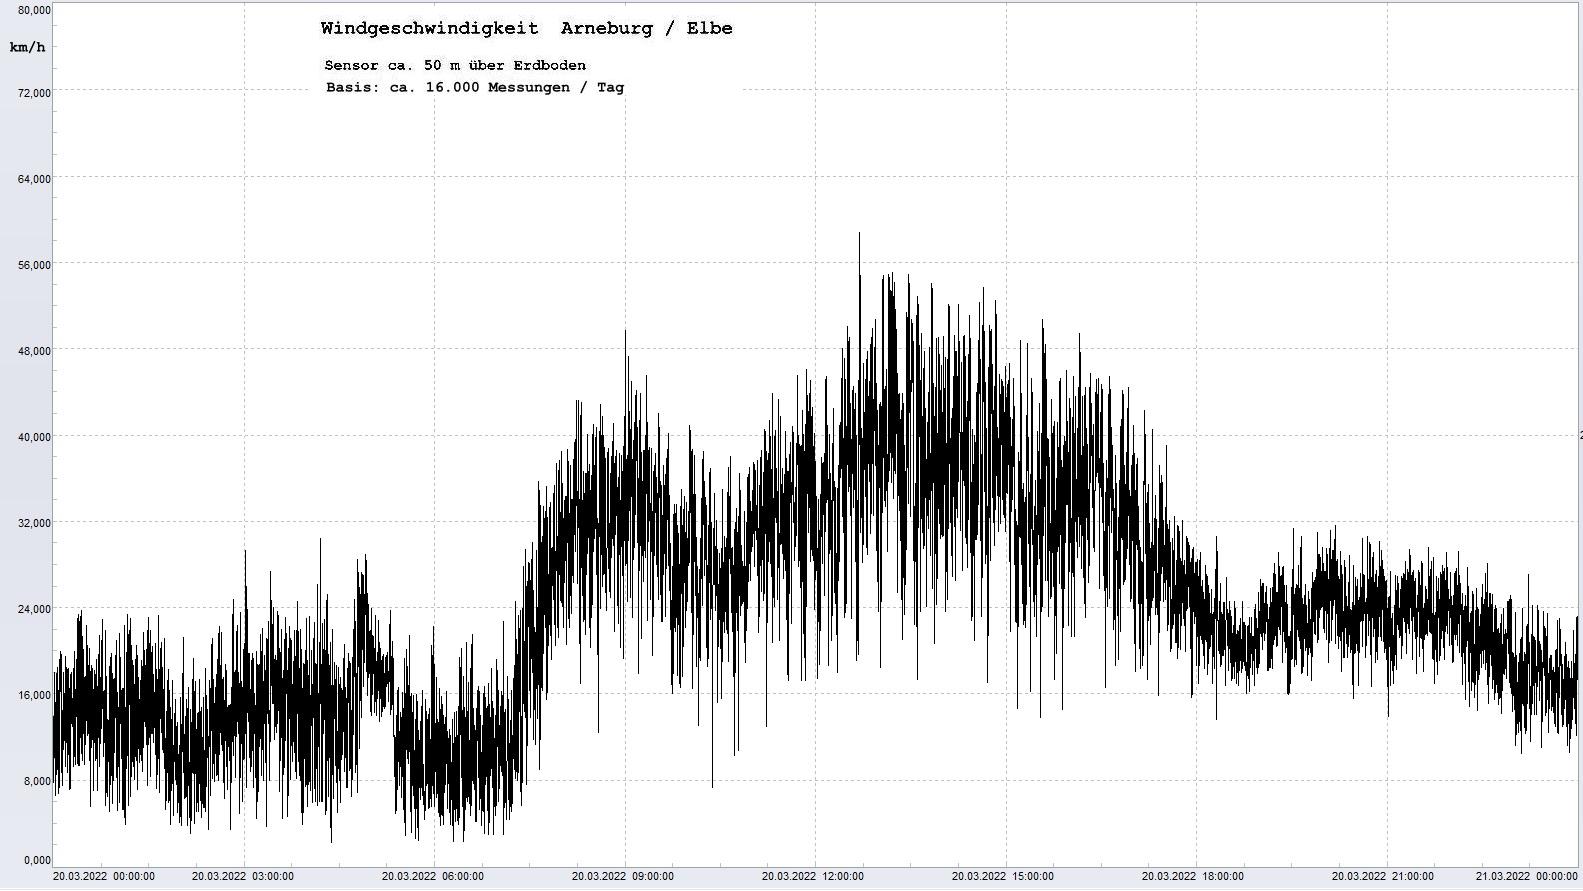 Arneburg Tages-Diagramm Winddaten, 20.03.2022
  Diaramm, Sensor auf Gebäude, ca. 50 m über Erdboden, Basis: 5s-Aufzeichnung